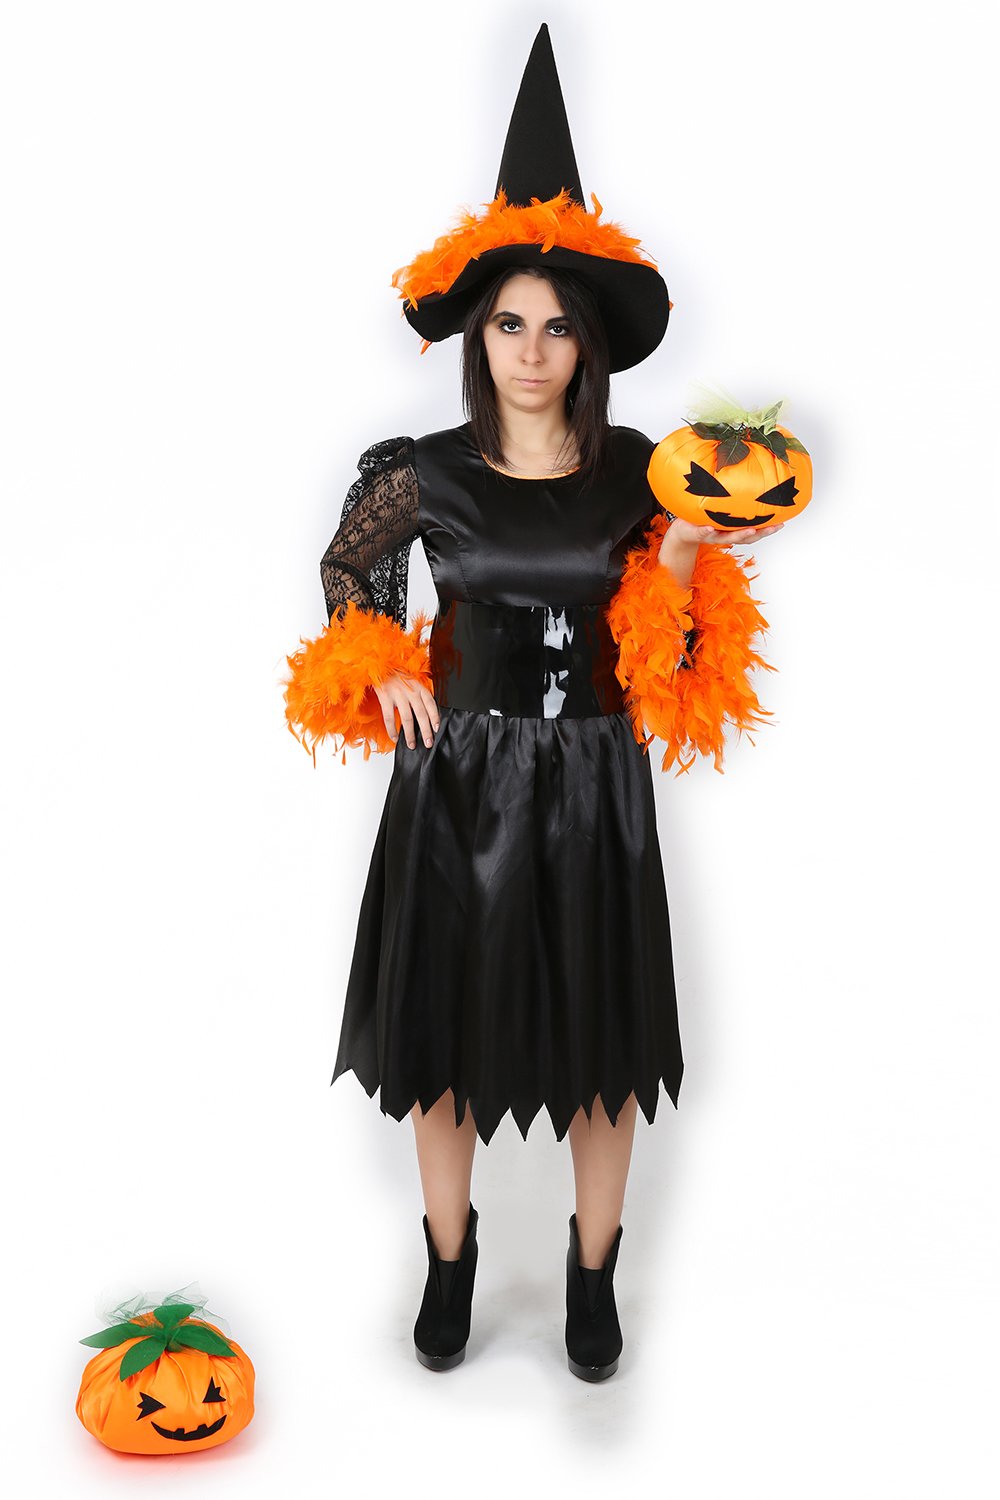 Turuncu Tüylü Cadı Kostüm, Cadı Kostüm Takımı, Cadılar Bayramı Cadı Kıyafeti, Hızlı Kargo